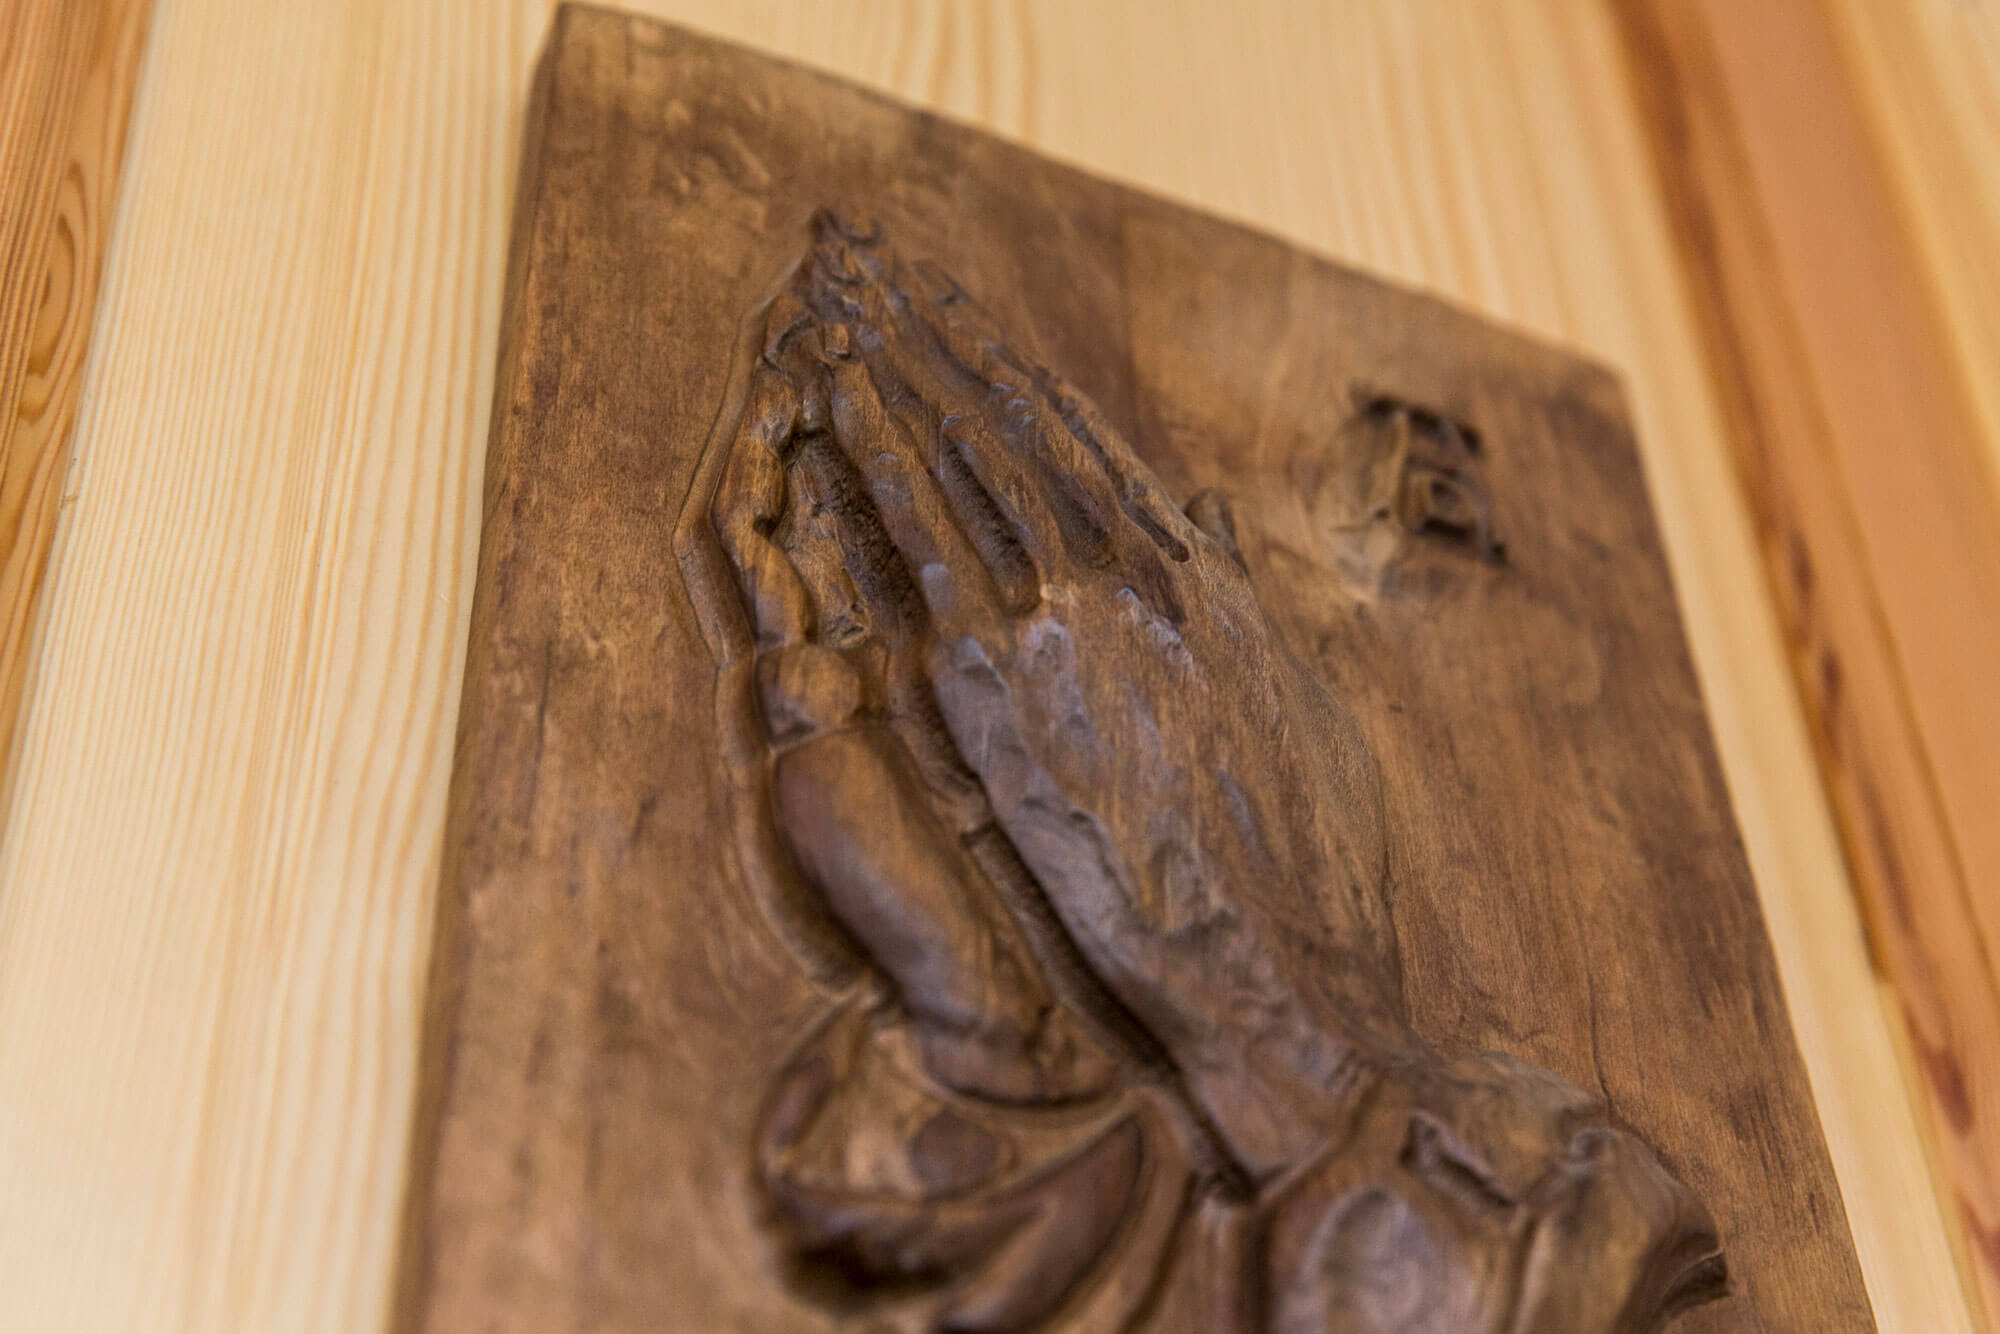 Holzbild mit betenden Händen an einer Holztür